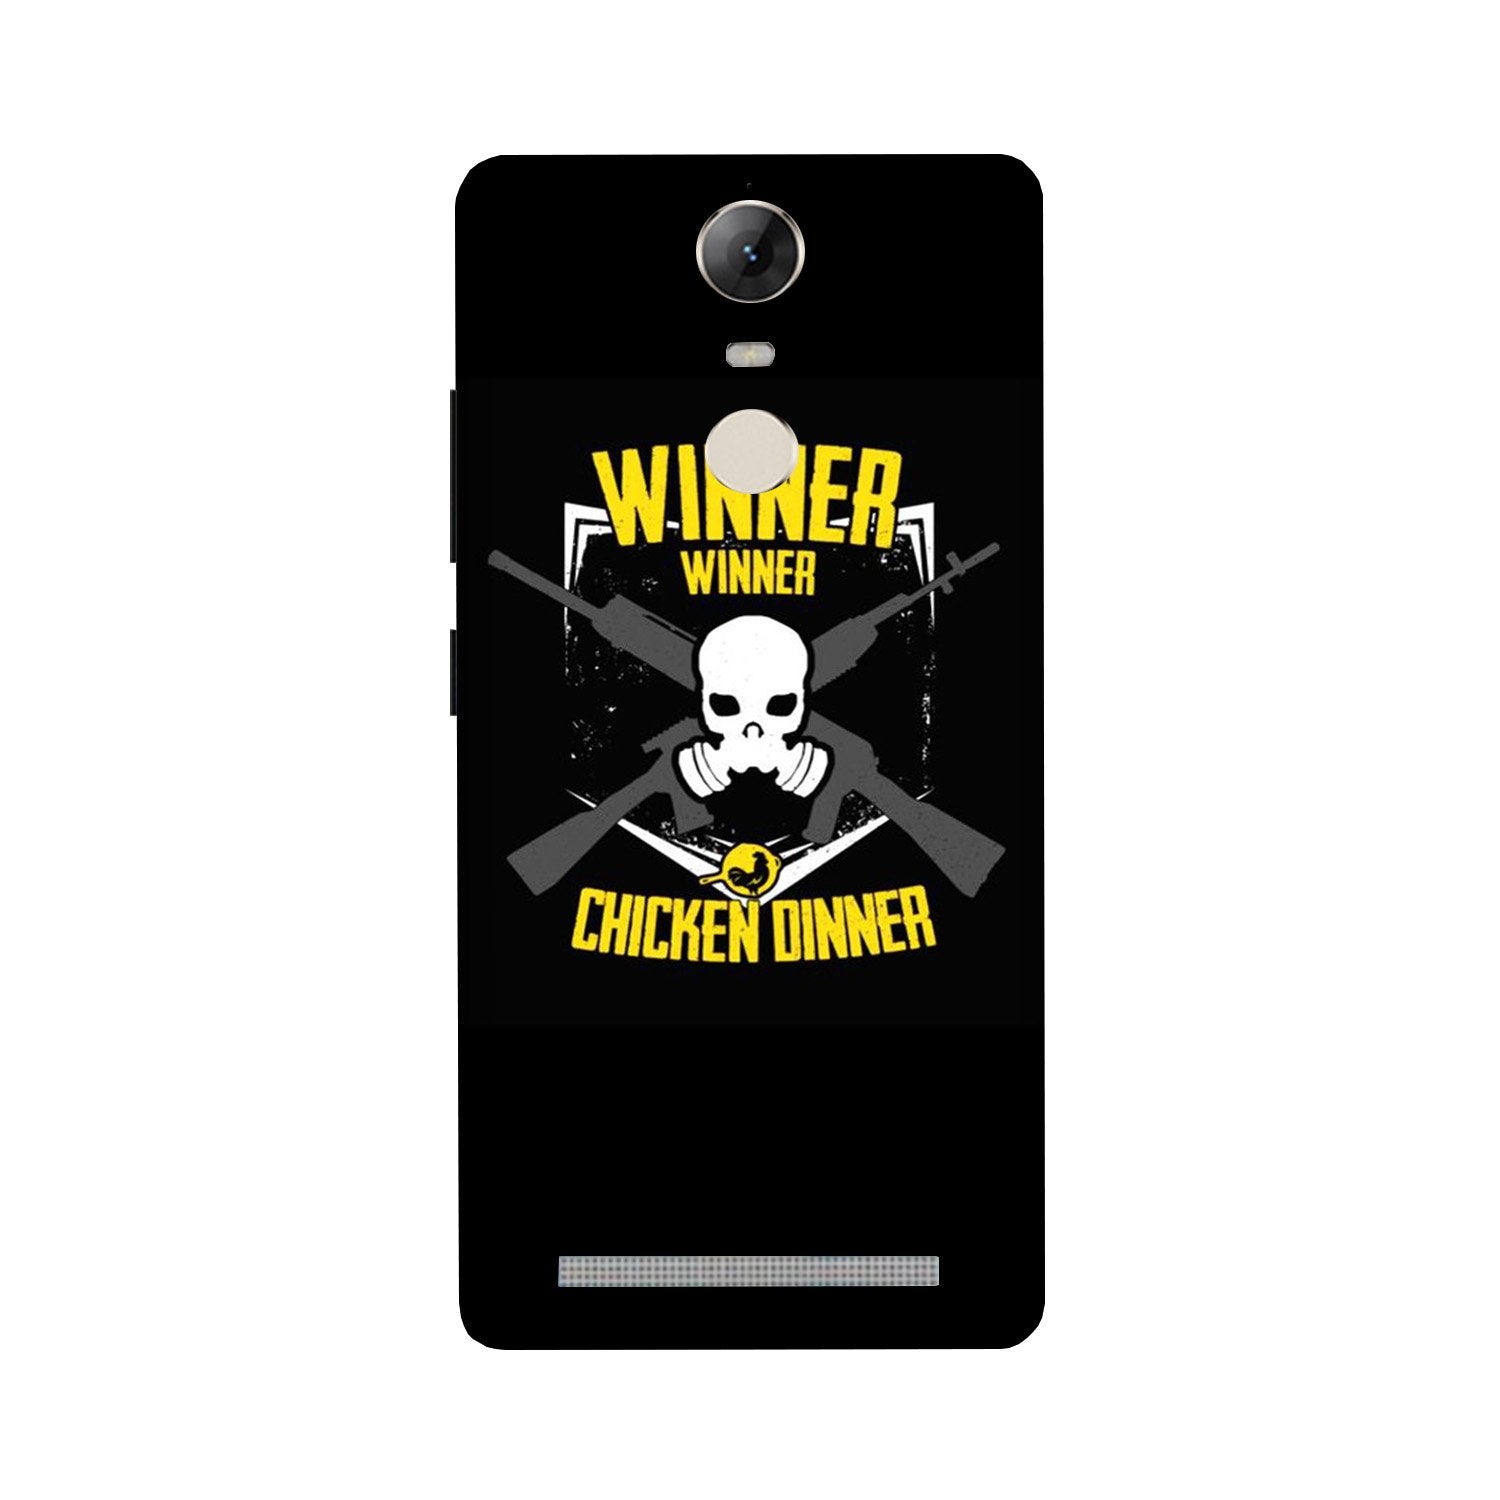 Winner Winner Chicken Dinner Case for Lenovo Vibe K5 Note  (Design - 178)